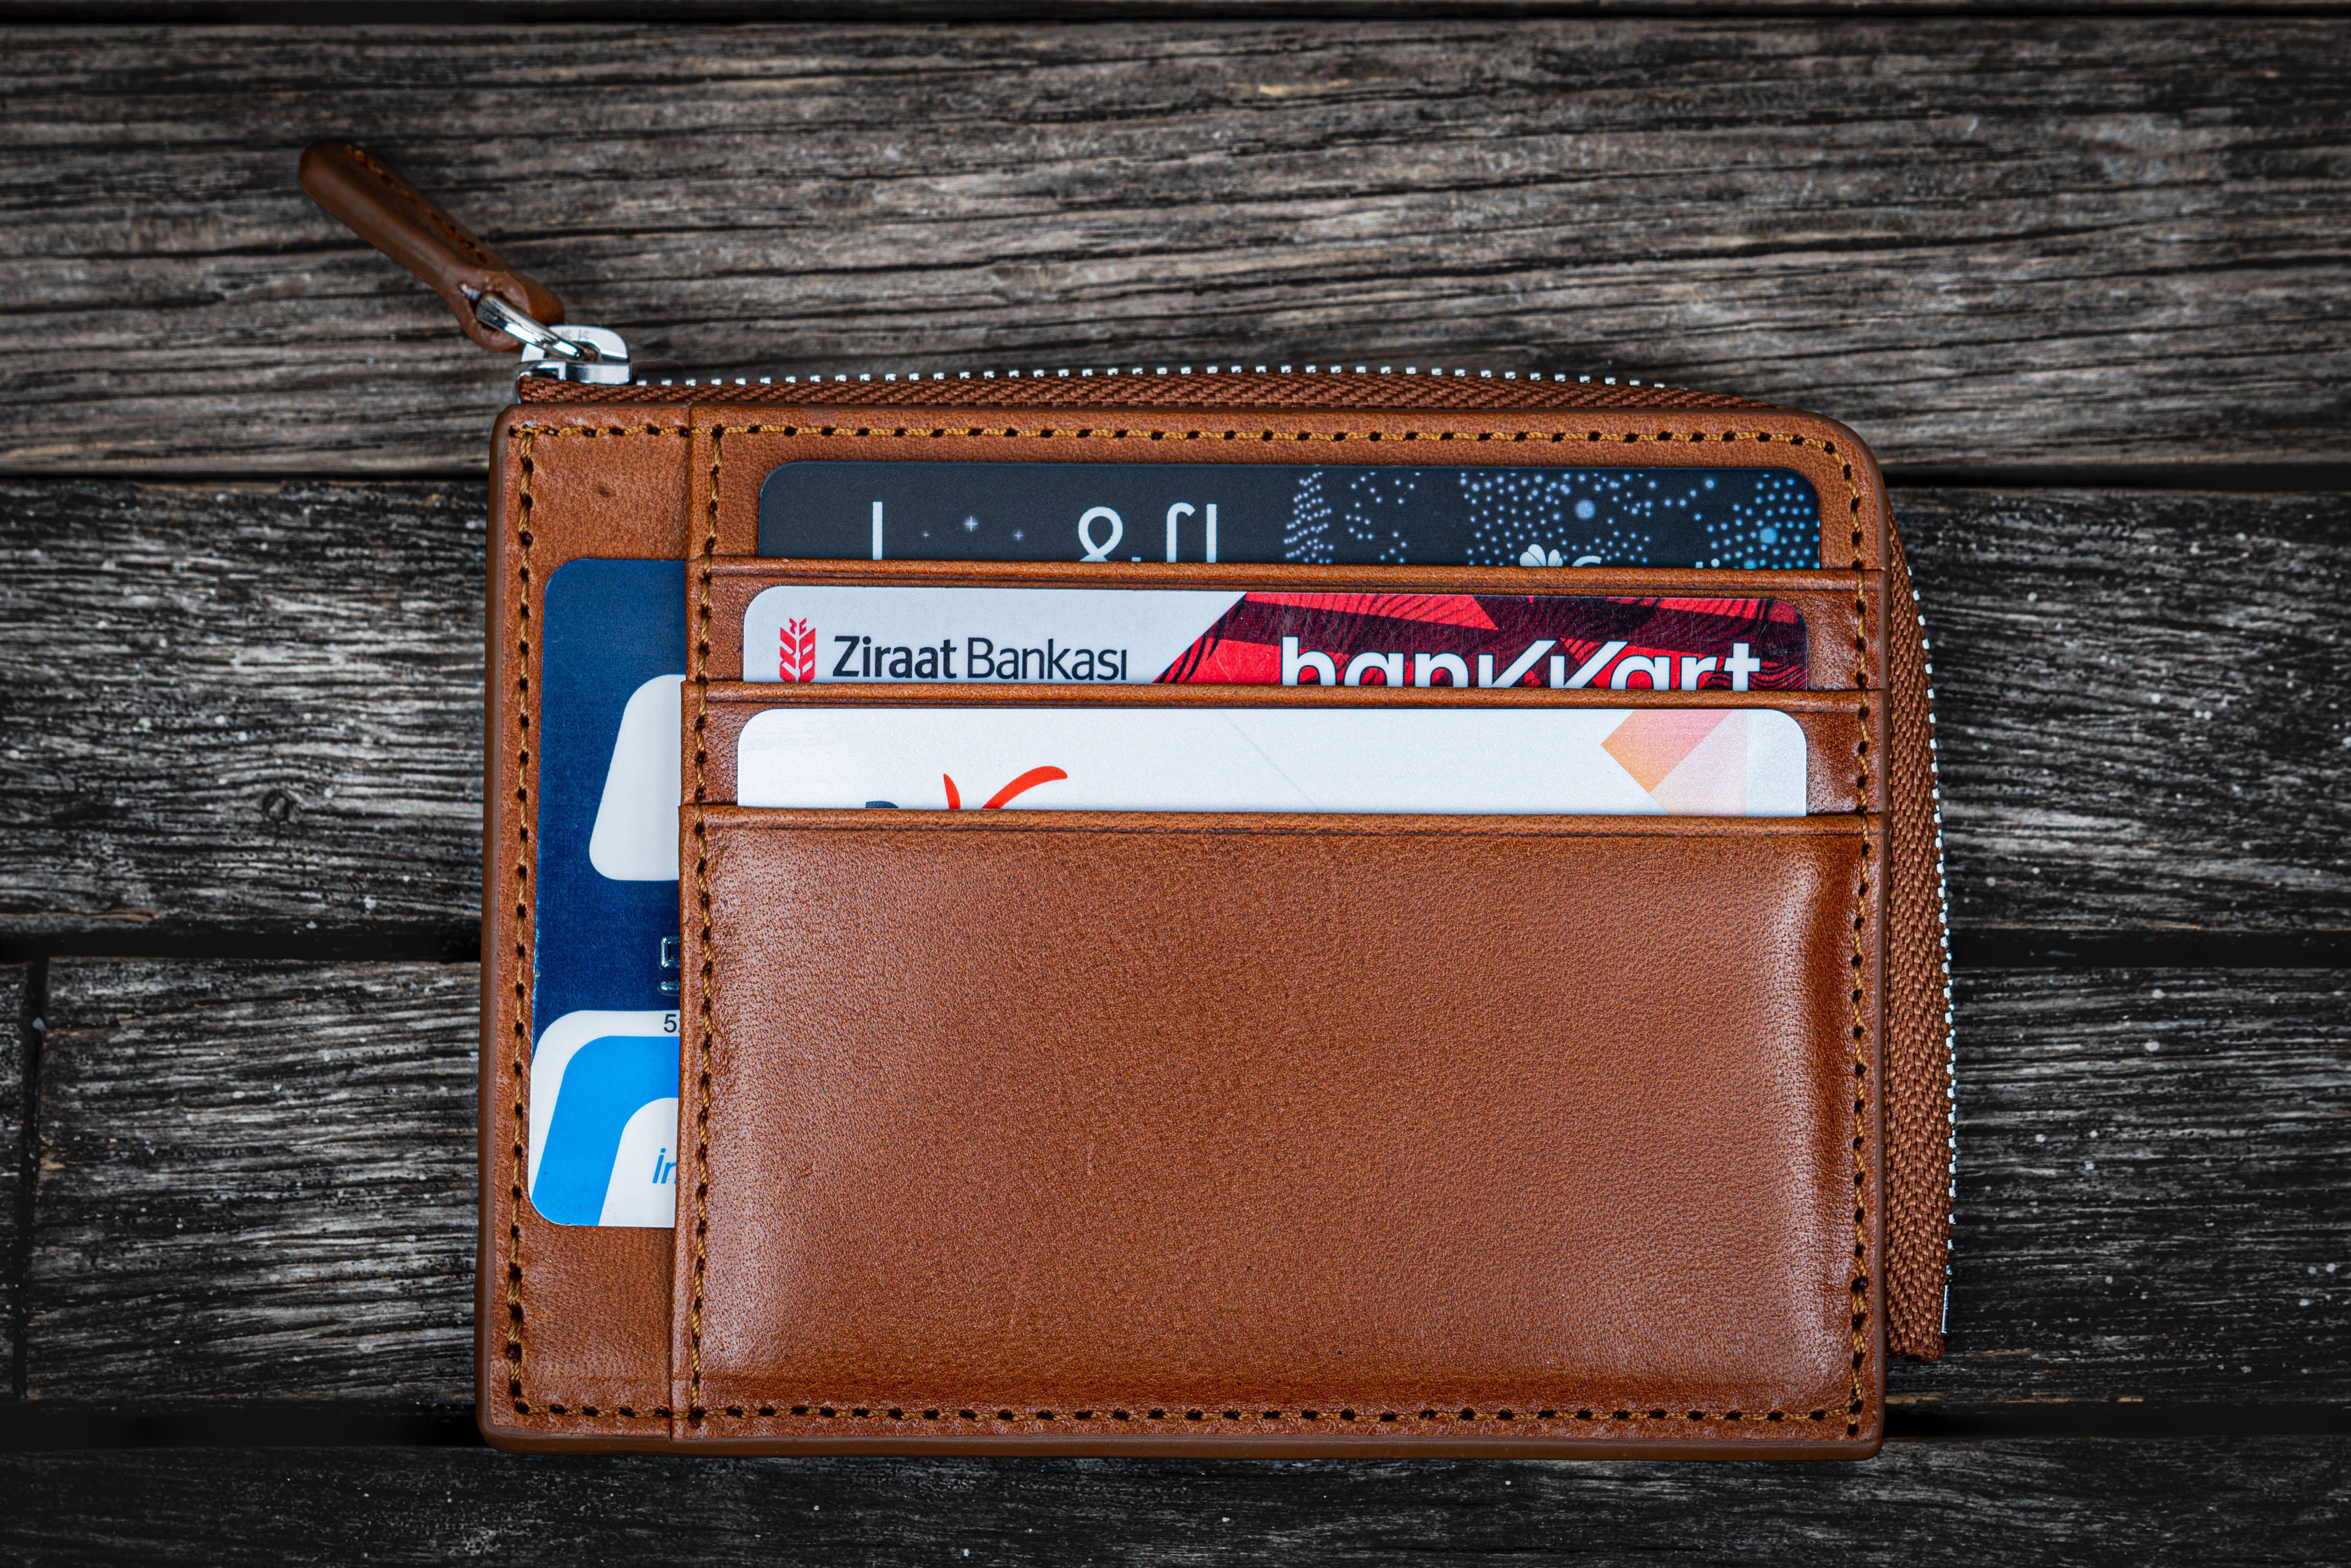 DOUBLE Sided Designer CARD HOLDER Wallet Men Purse Porte Cartes